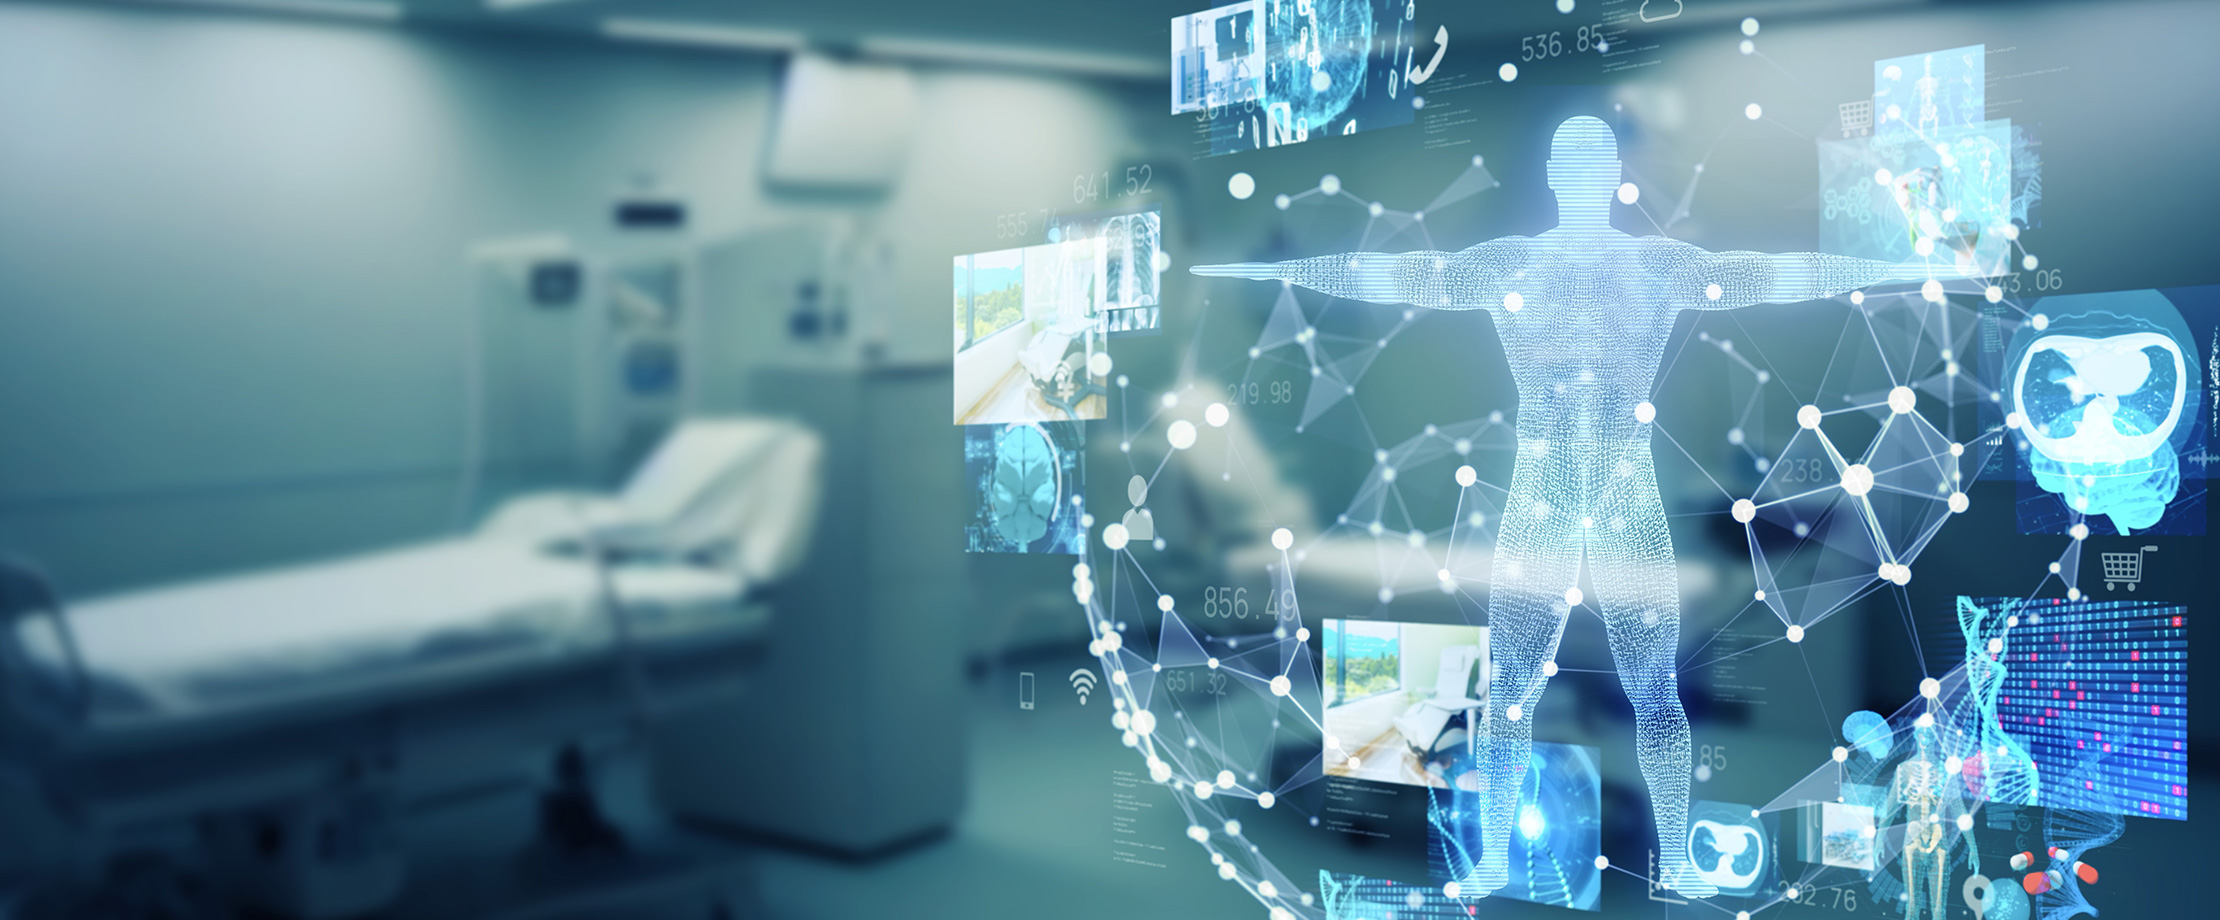 In einem Krankenhauszimmer sieht man die digitale Darstellung eines Körpers mit Behandlungsmethoden.